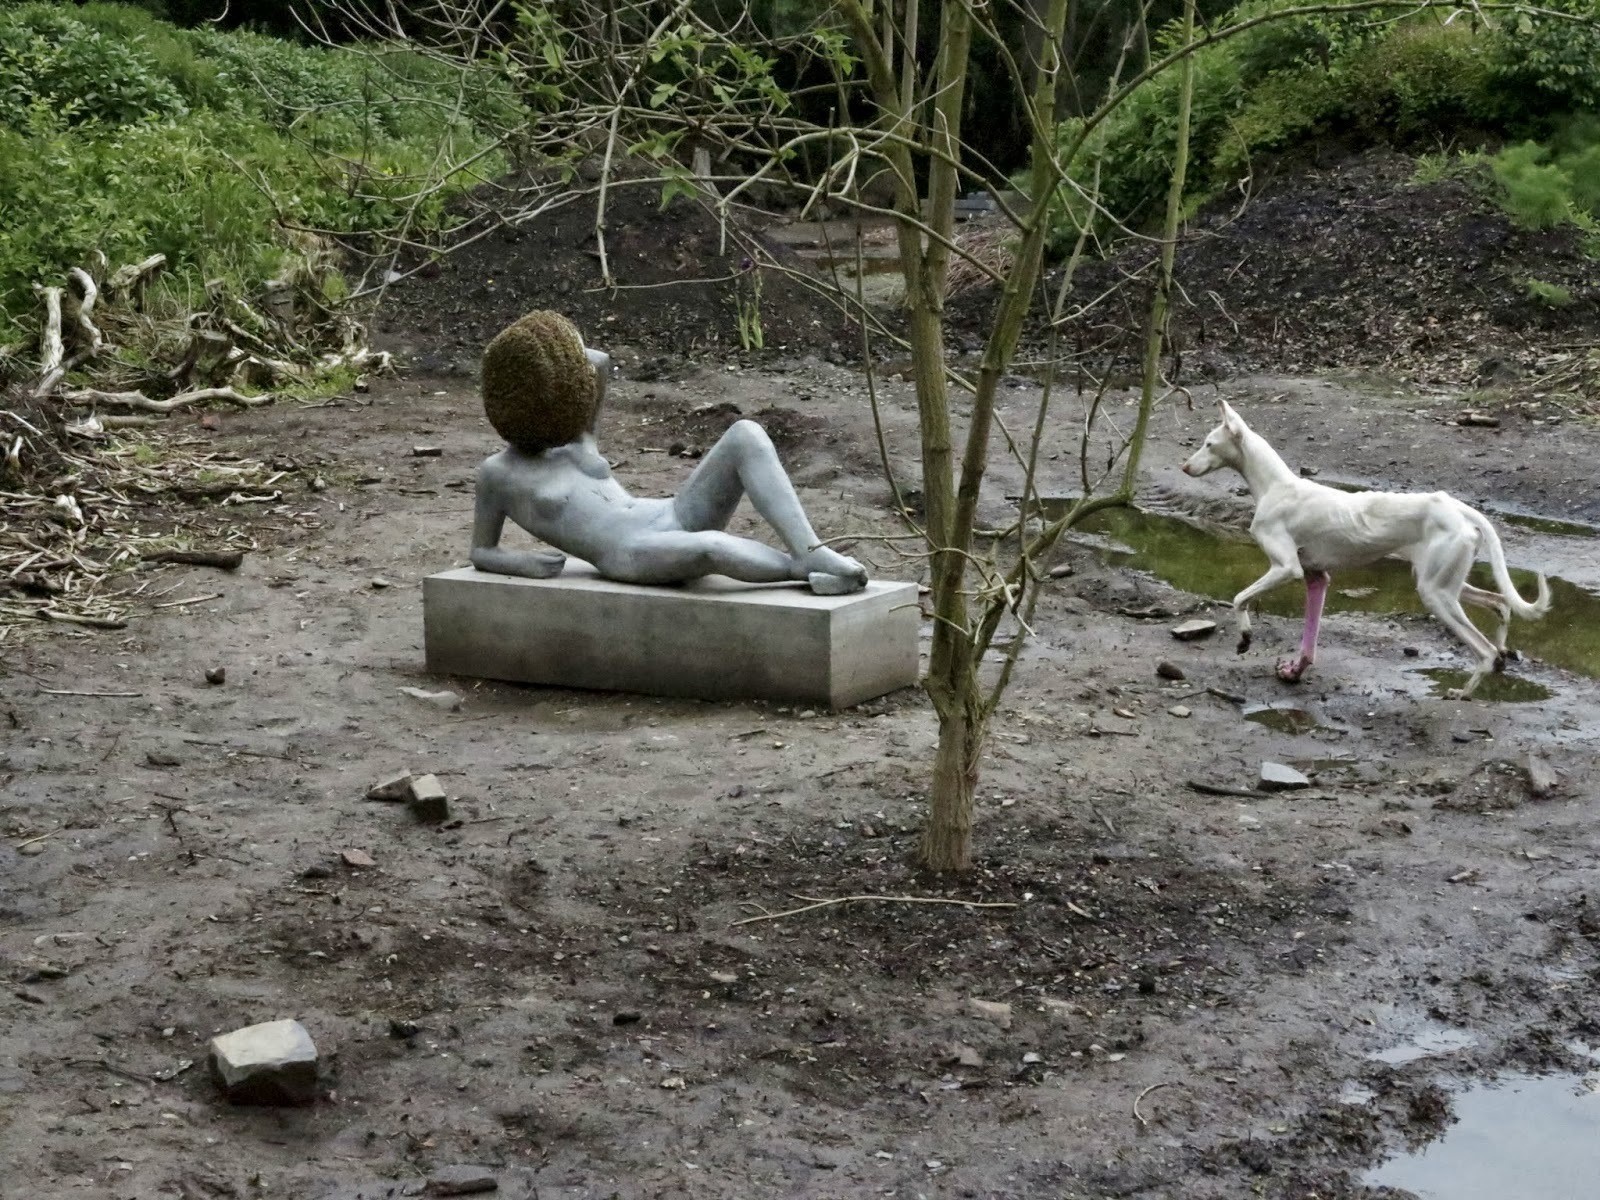 Pierre Huyghe. Untitled. 2012. Beehive, sculpture, painted dog. Centre Pompidou (Paris, France).